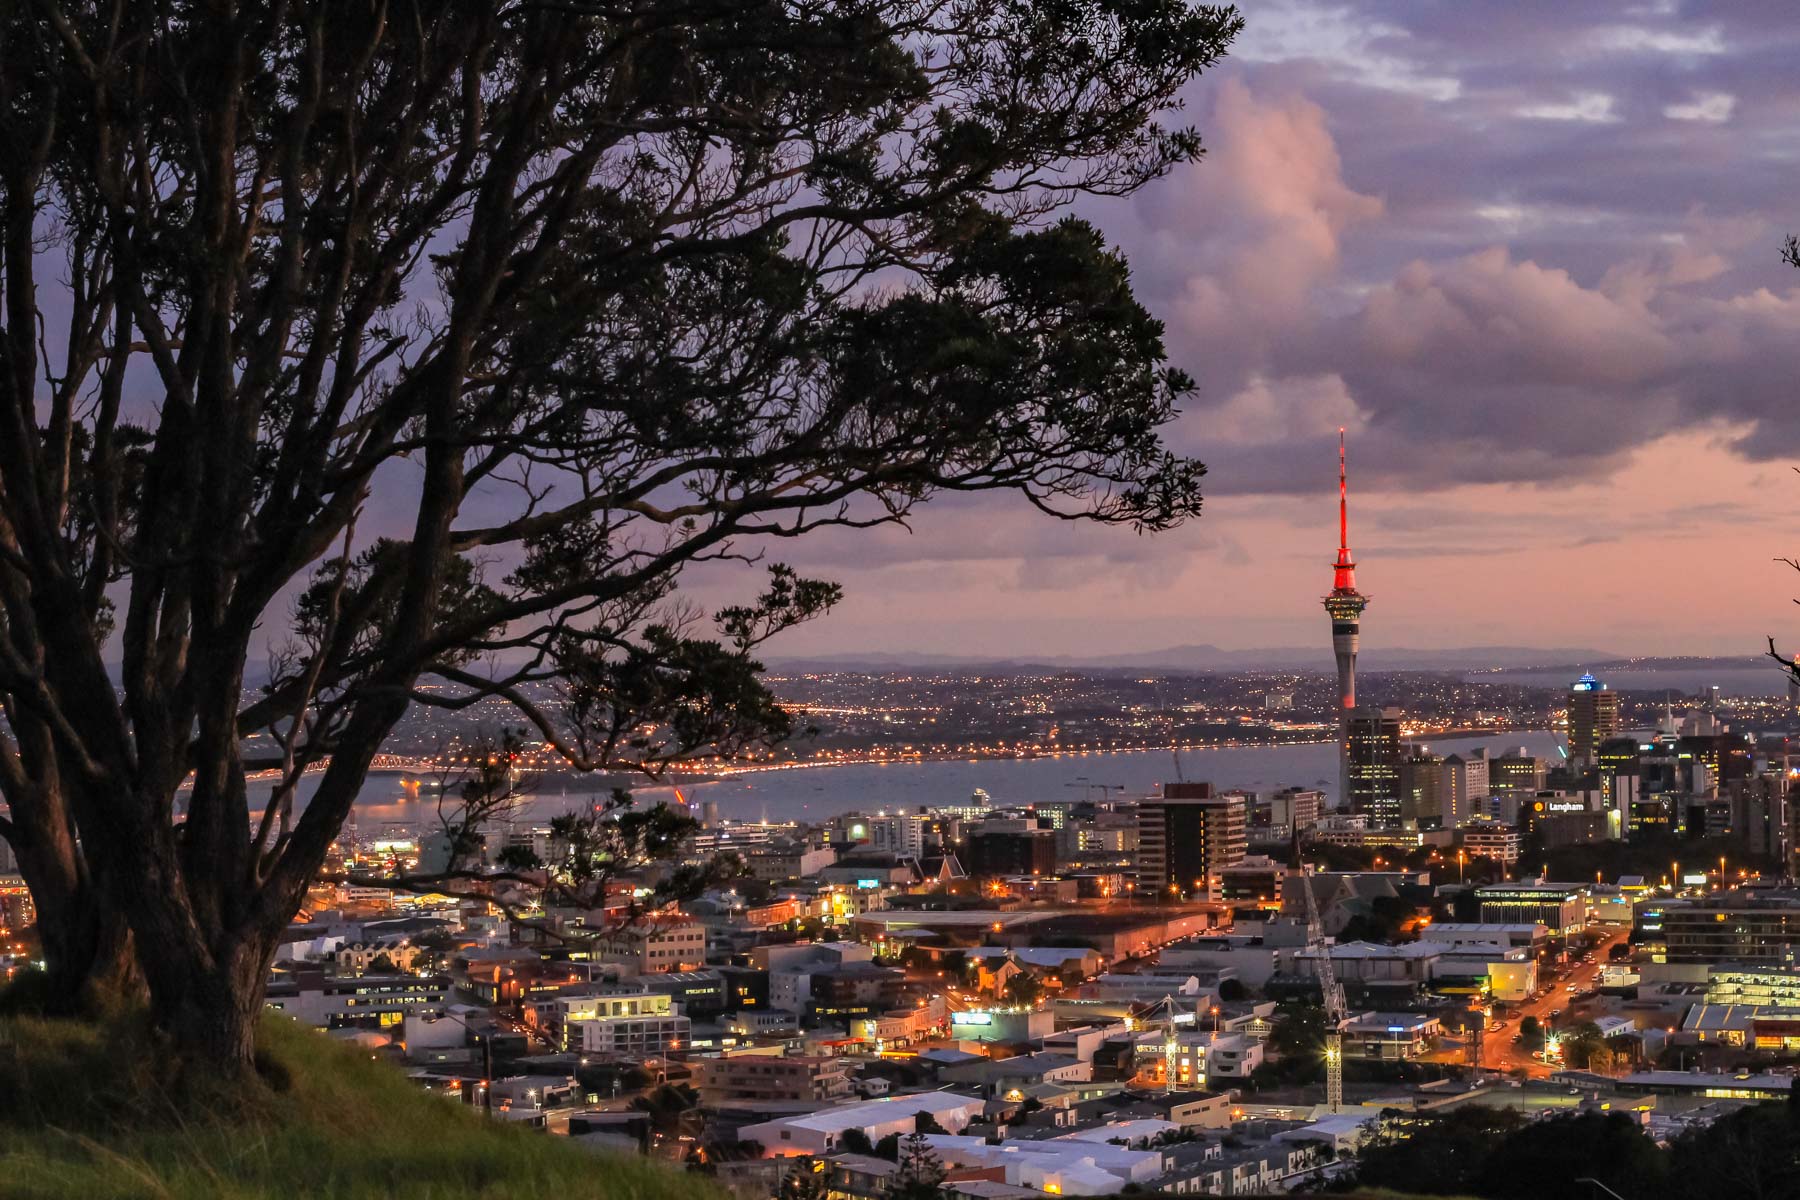 Nuages aux teintes rosées par l’aurore et point de vue en hauteur sur le centre-ville d’Auckland encore illuminé.